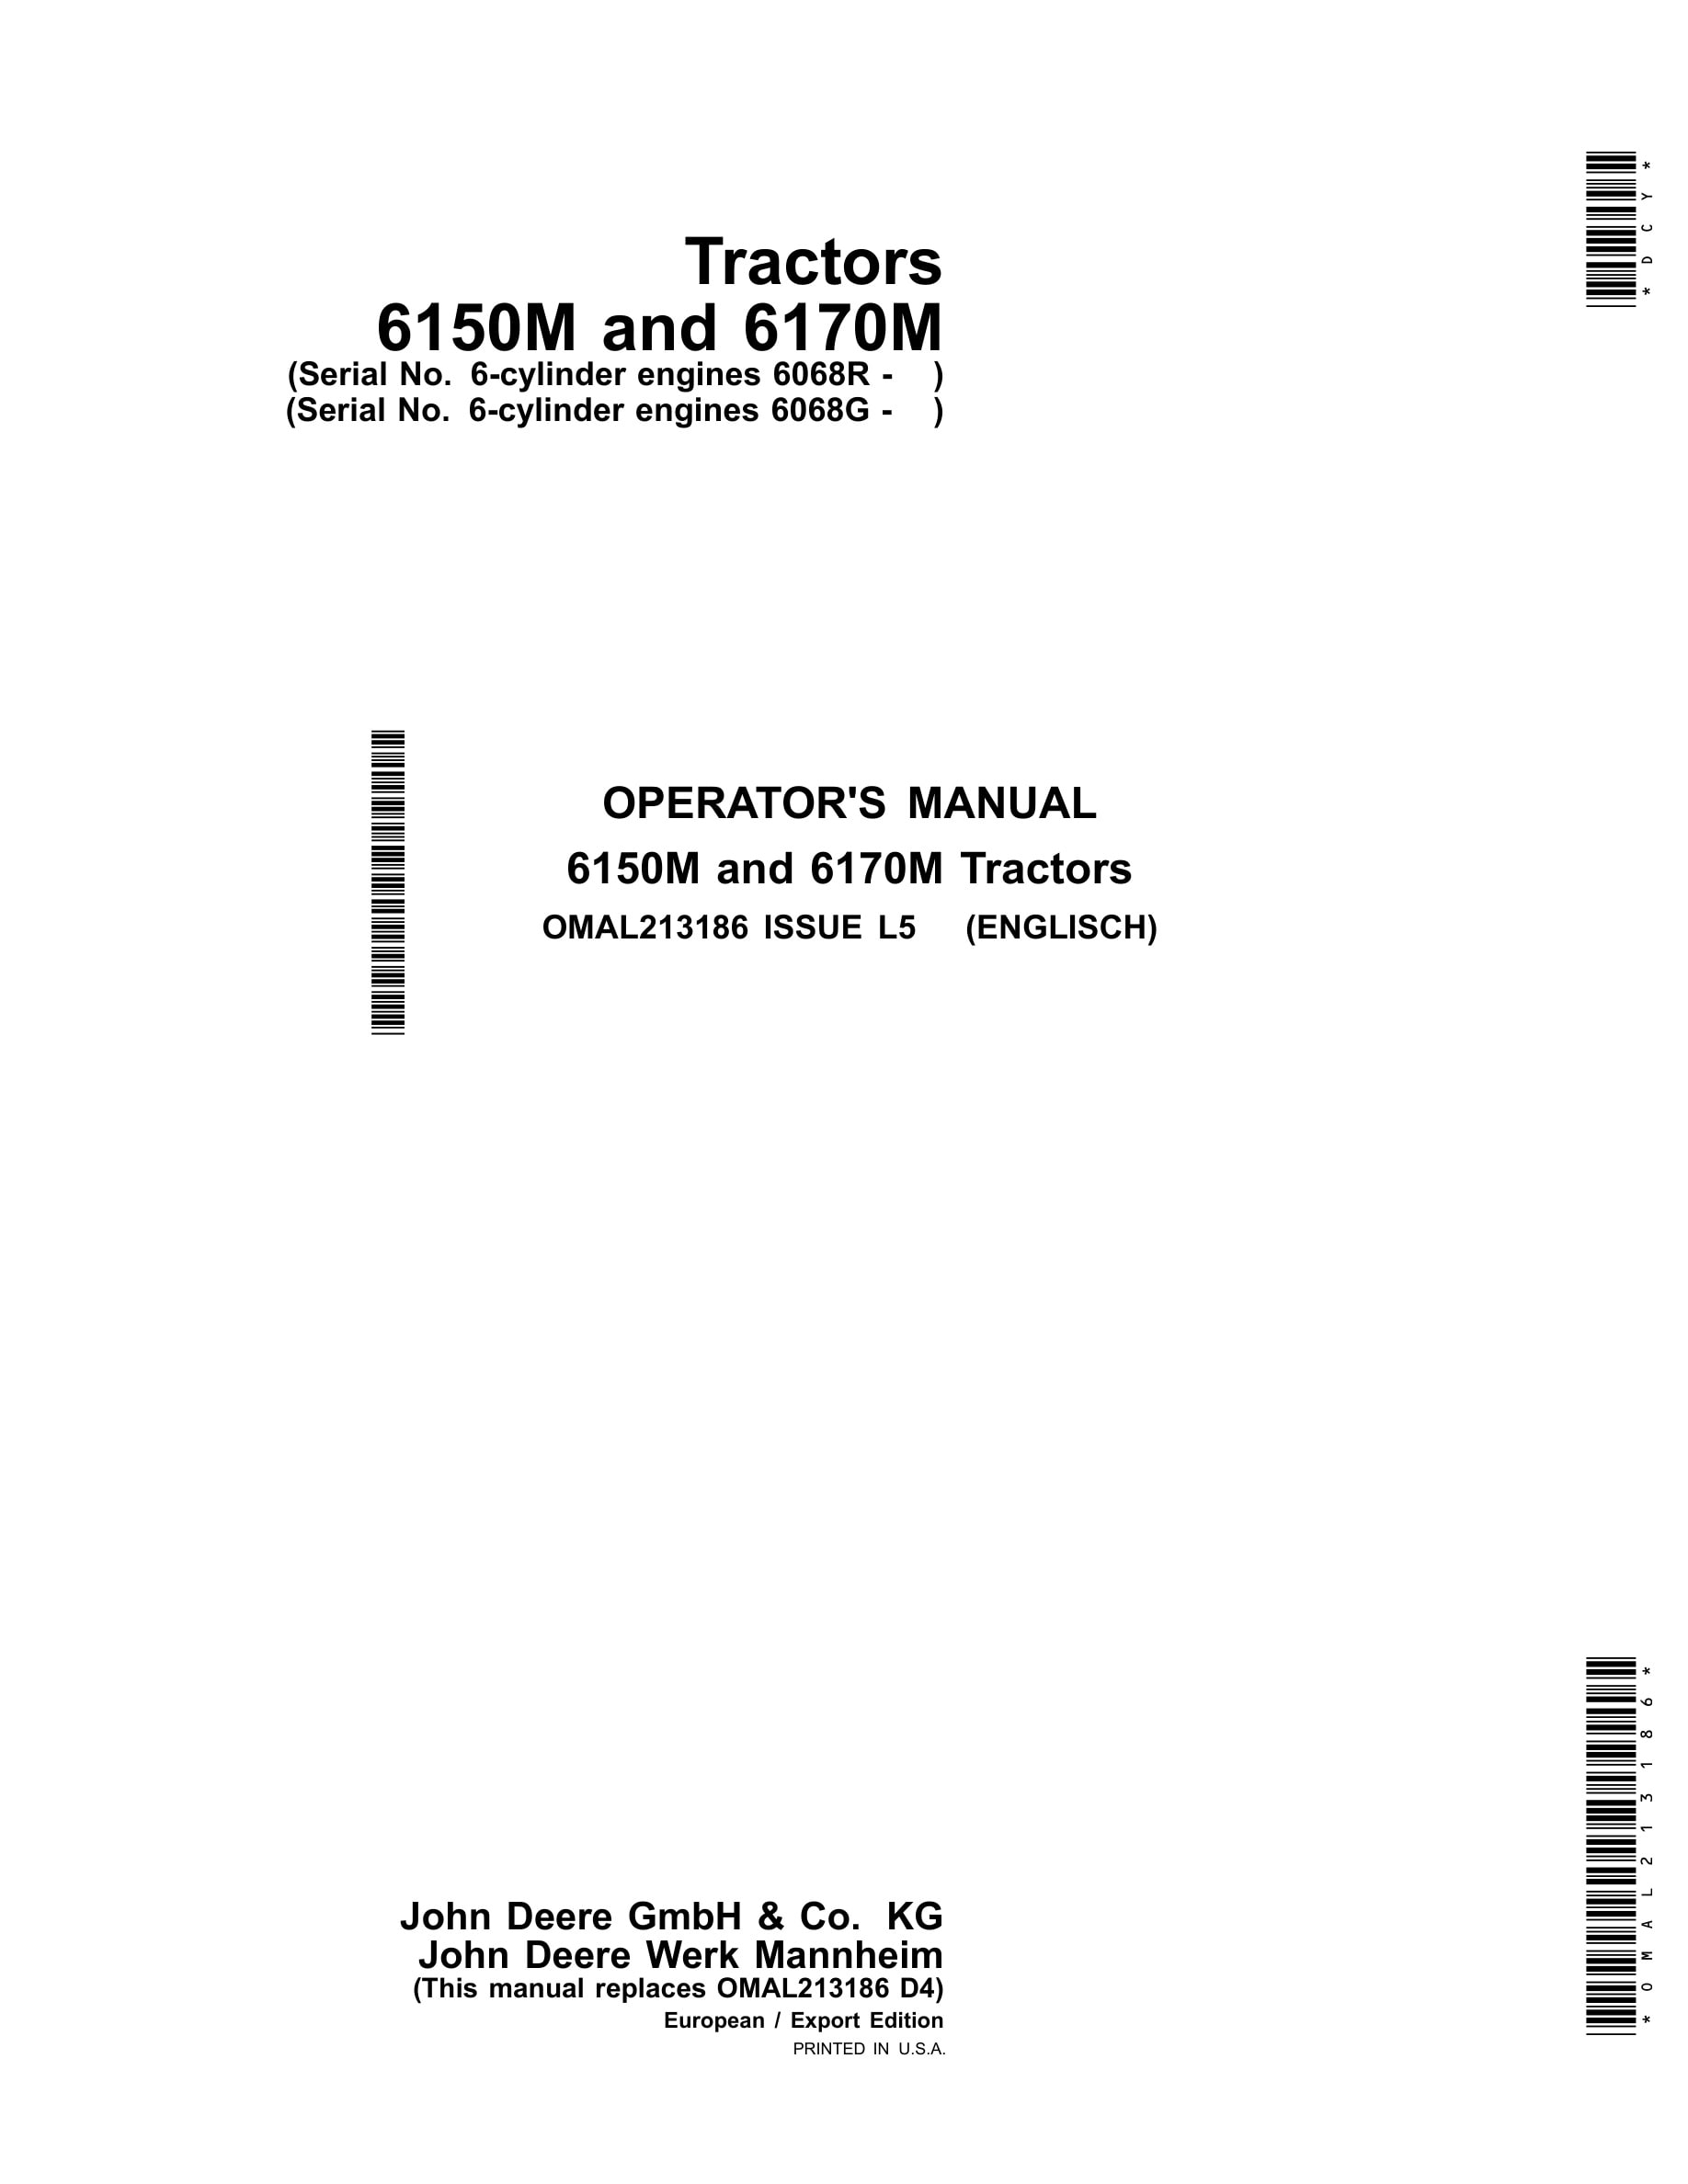 John Deere 6150m And 6170m Tractors Operator Manuals OMAL213186-1